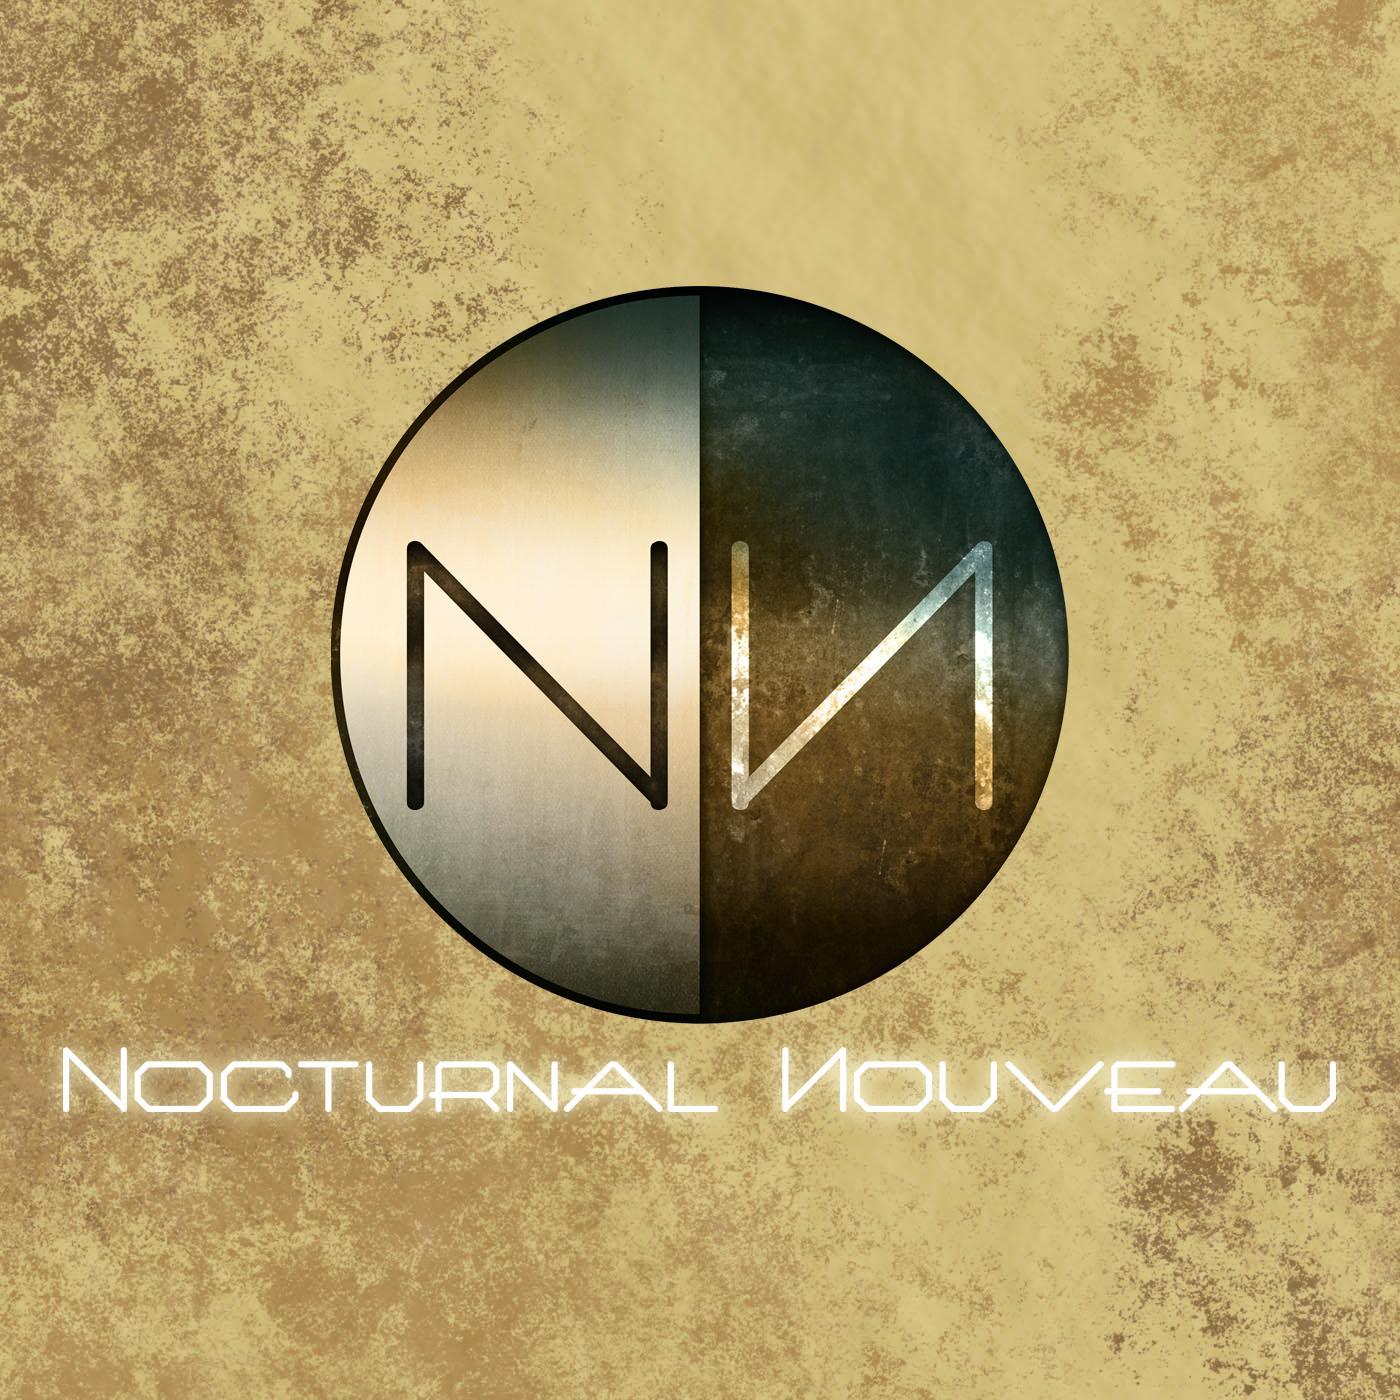 Matt Nouveau - Nocturnal Nouveau 608 (2017-04-12)